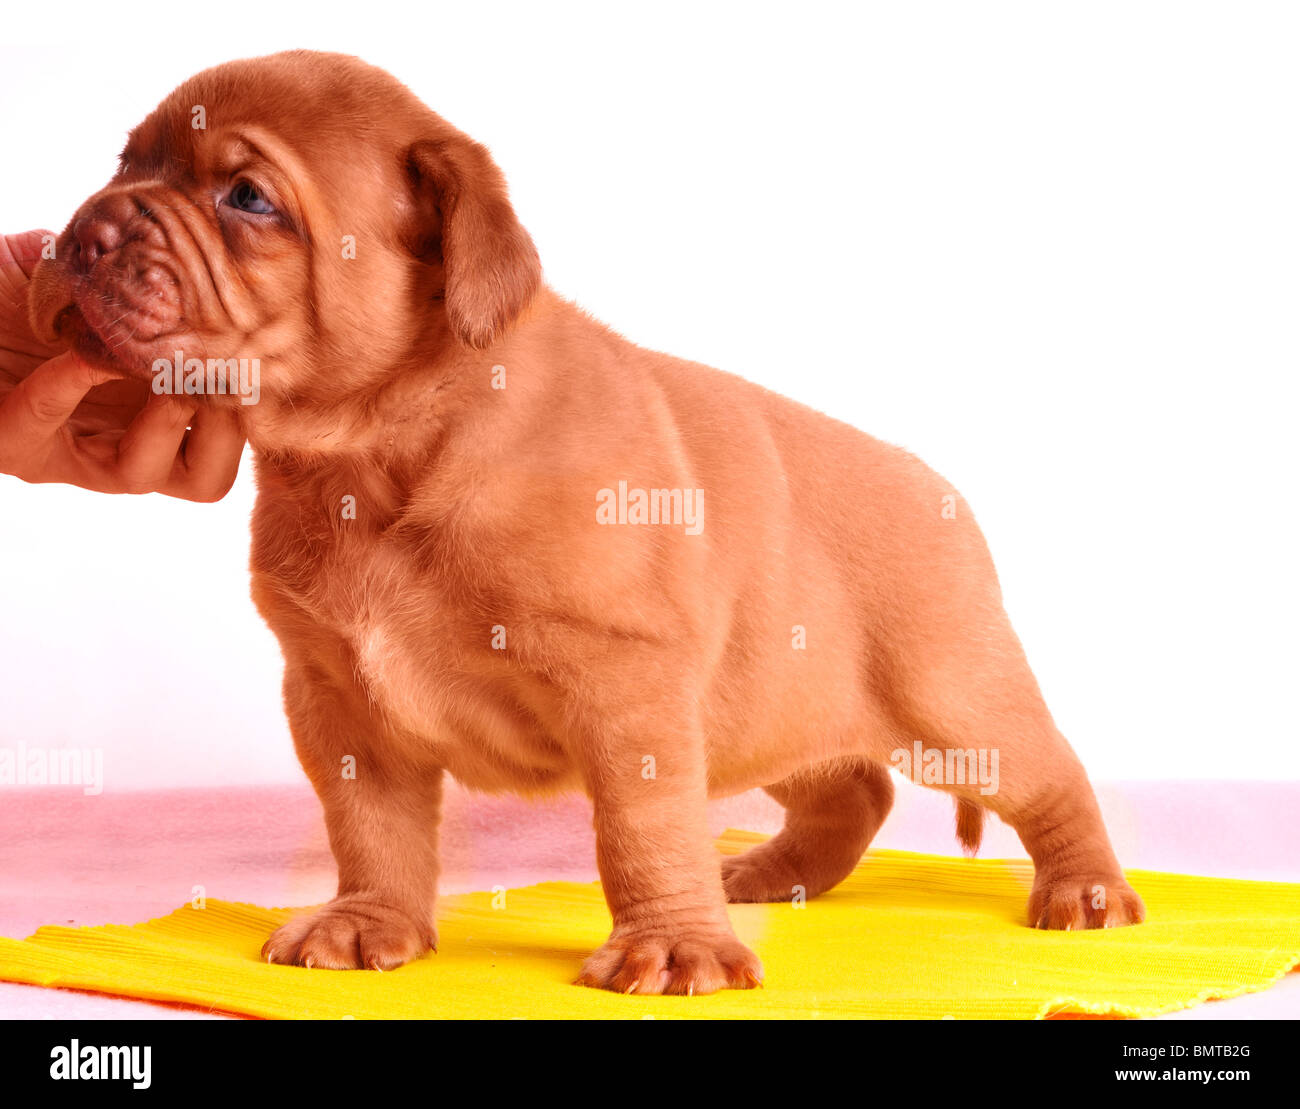 Nouveau-Dogue de Bordeaux chiot est debout sur un tapis jaune Banque D'Images